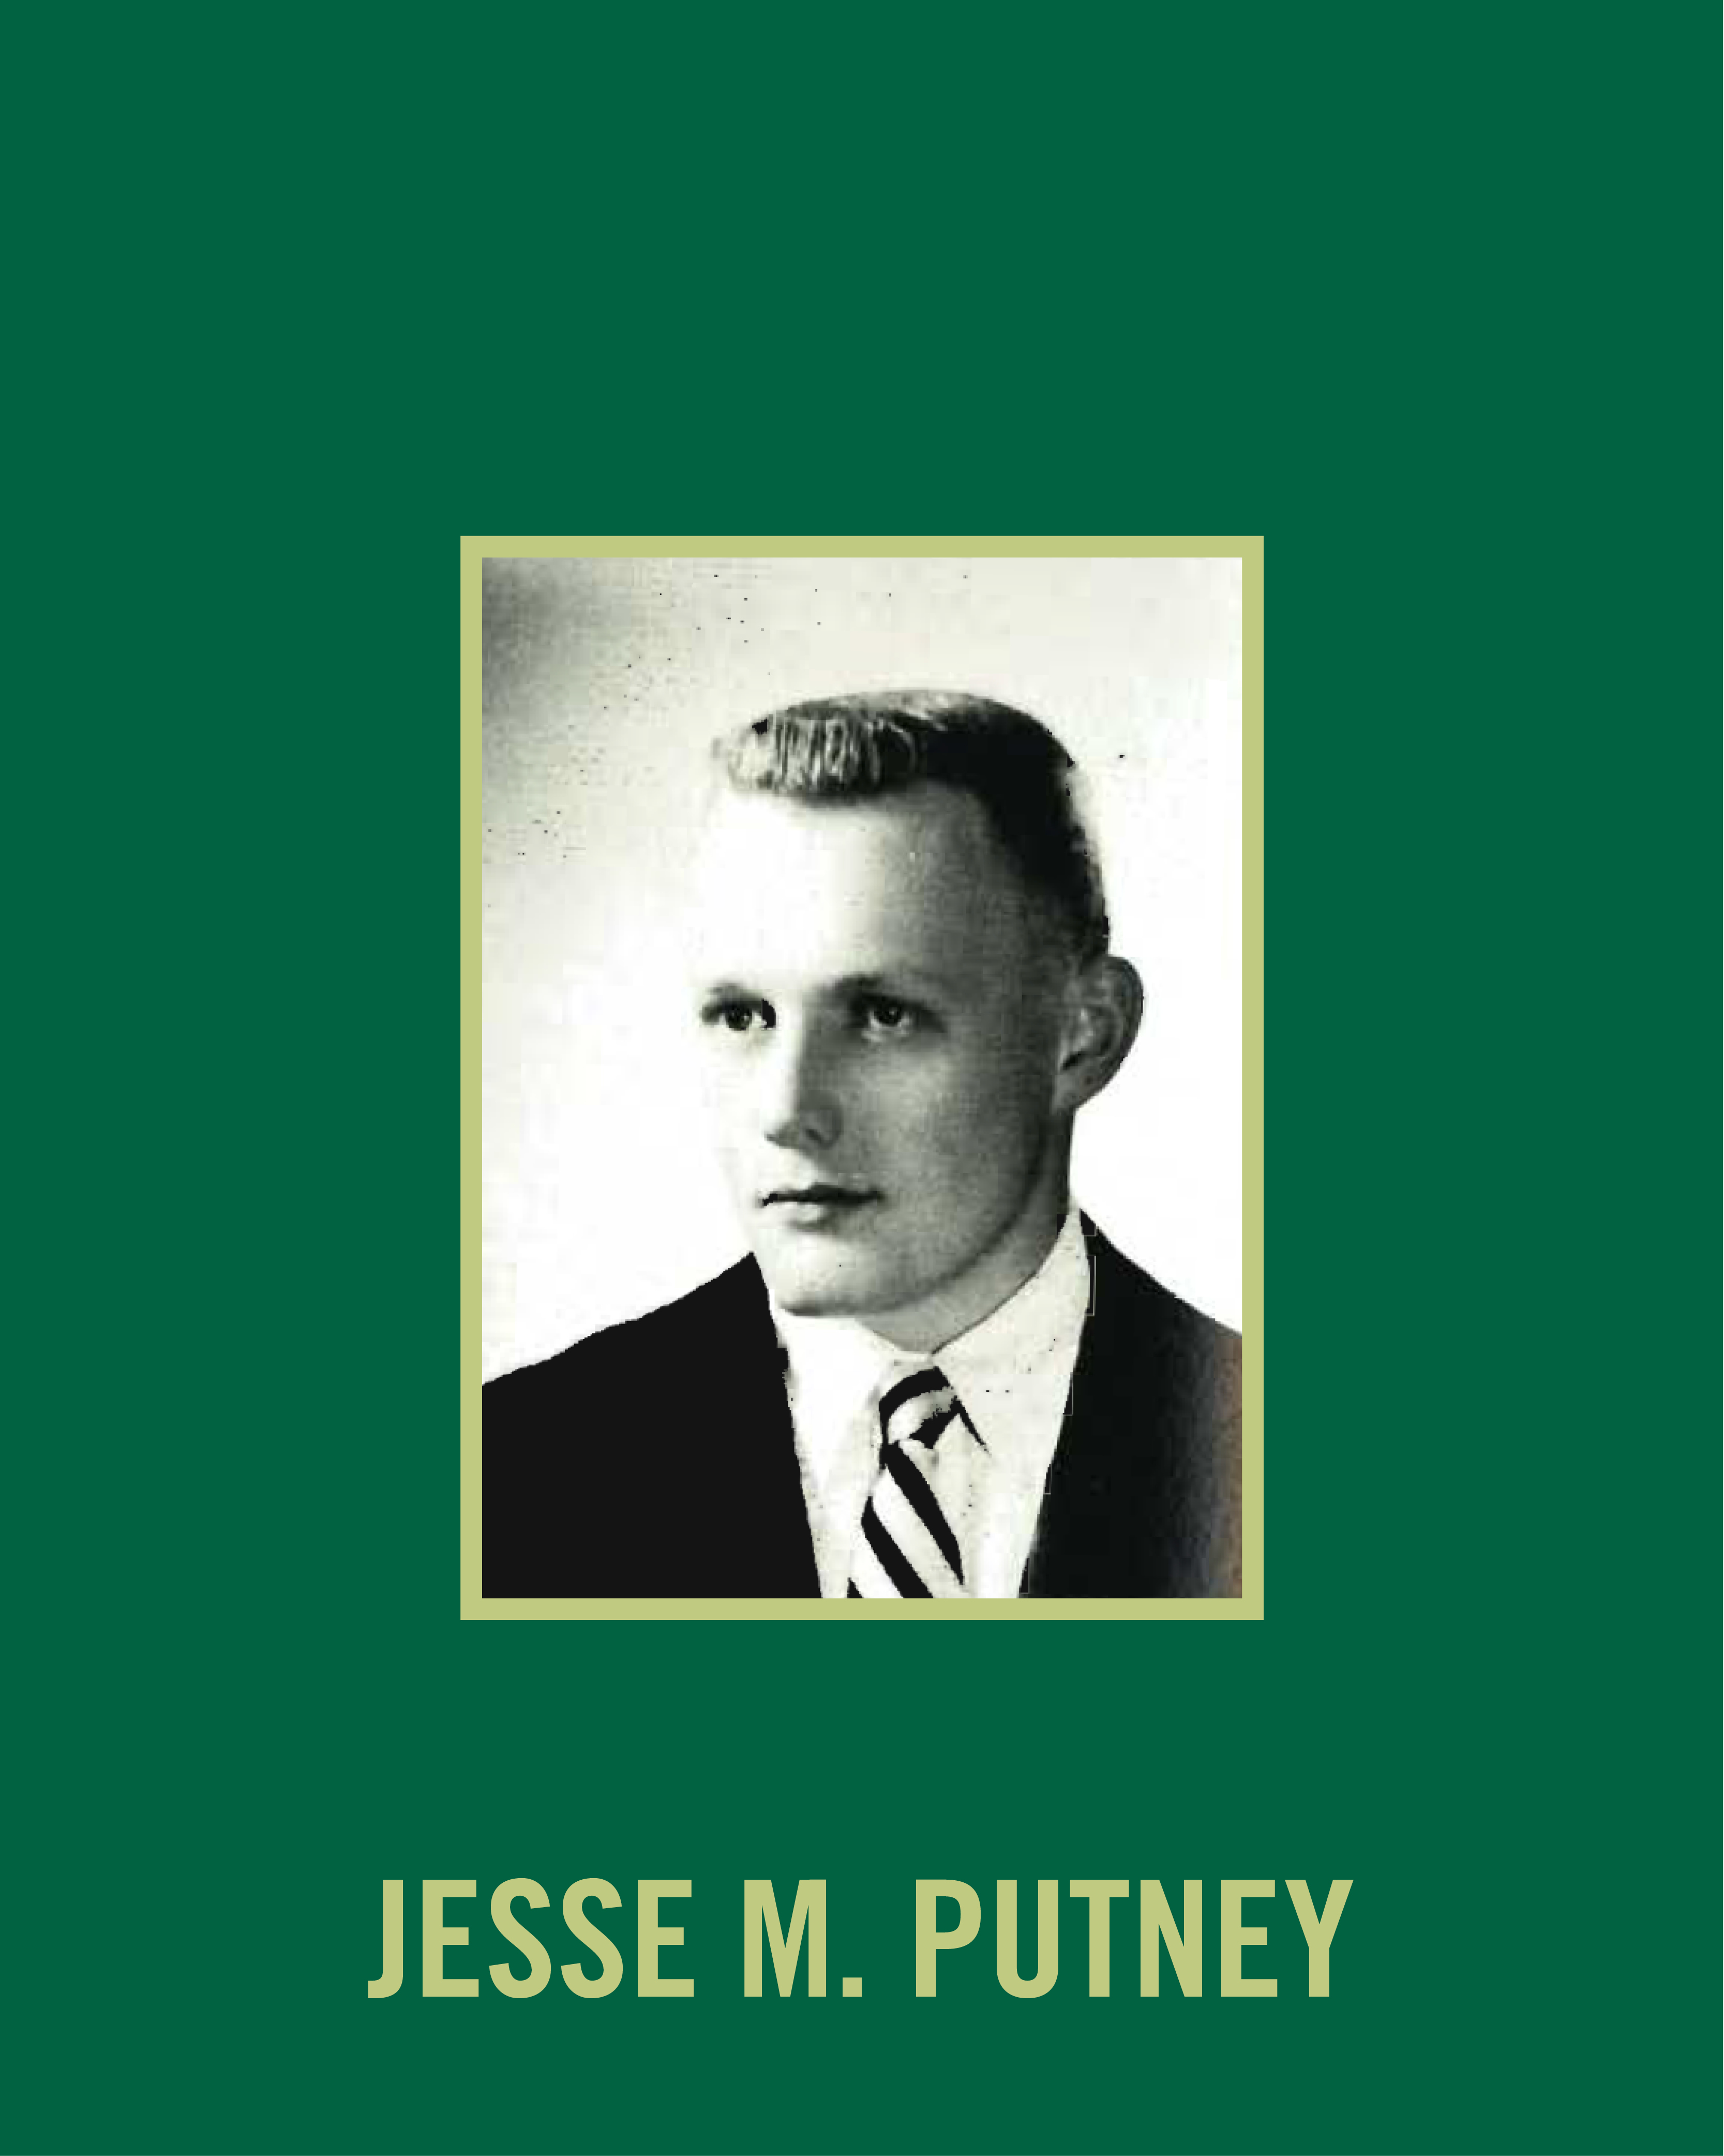 Jesse Putney